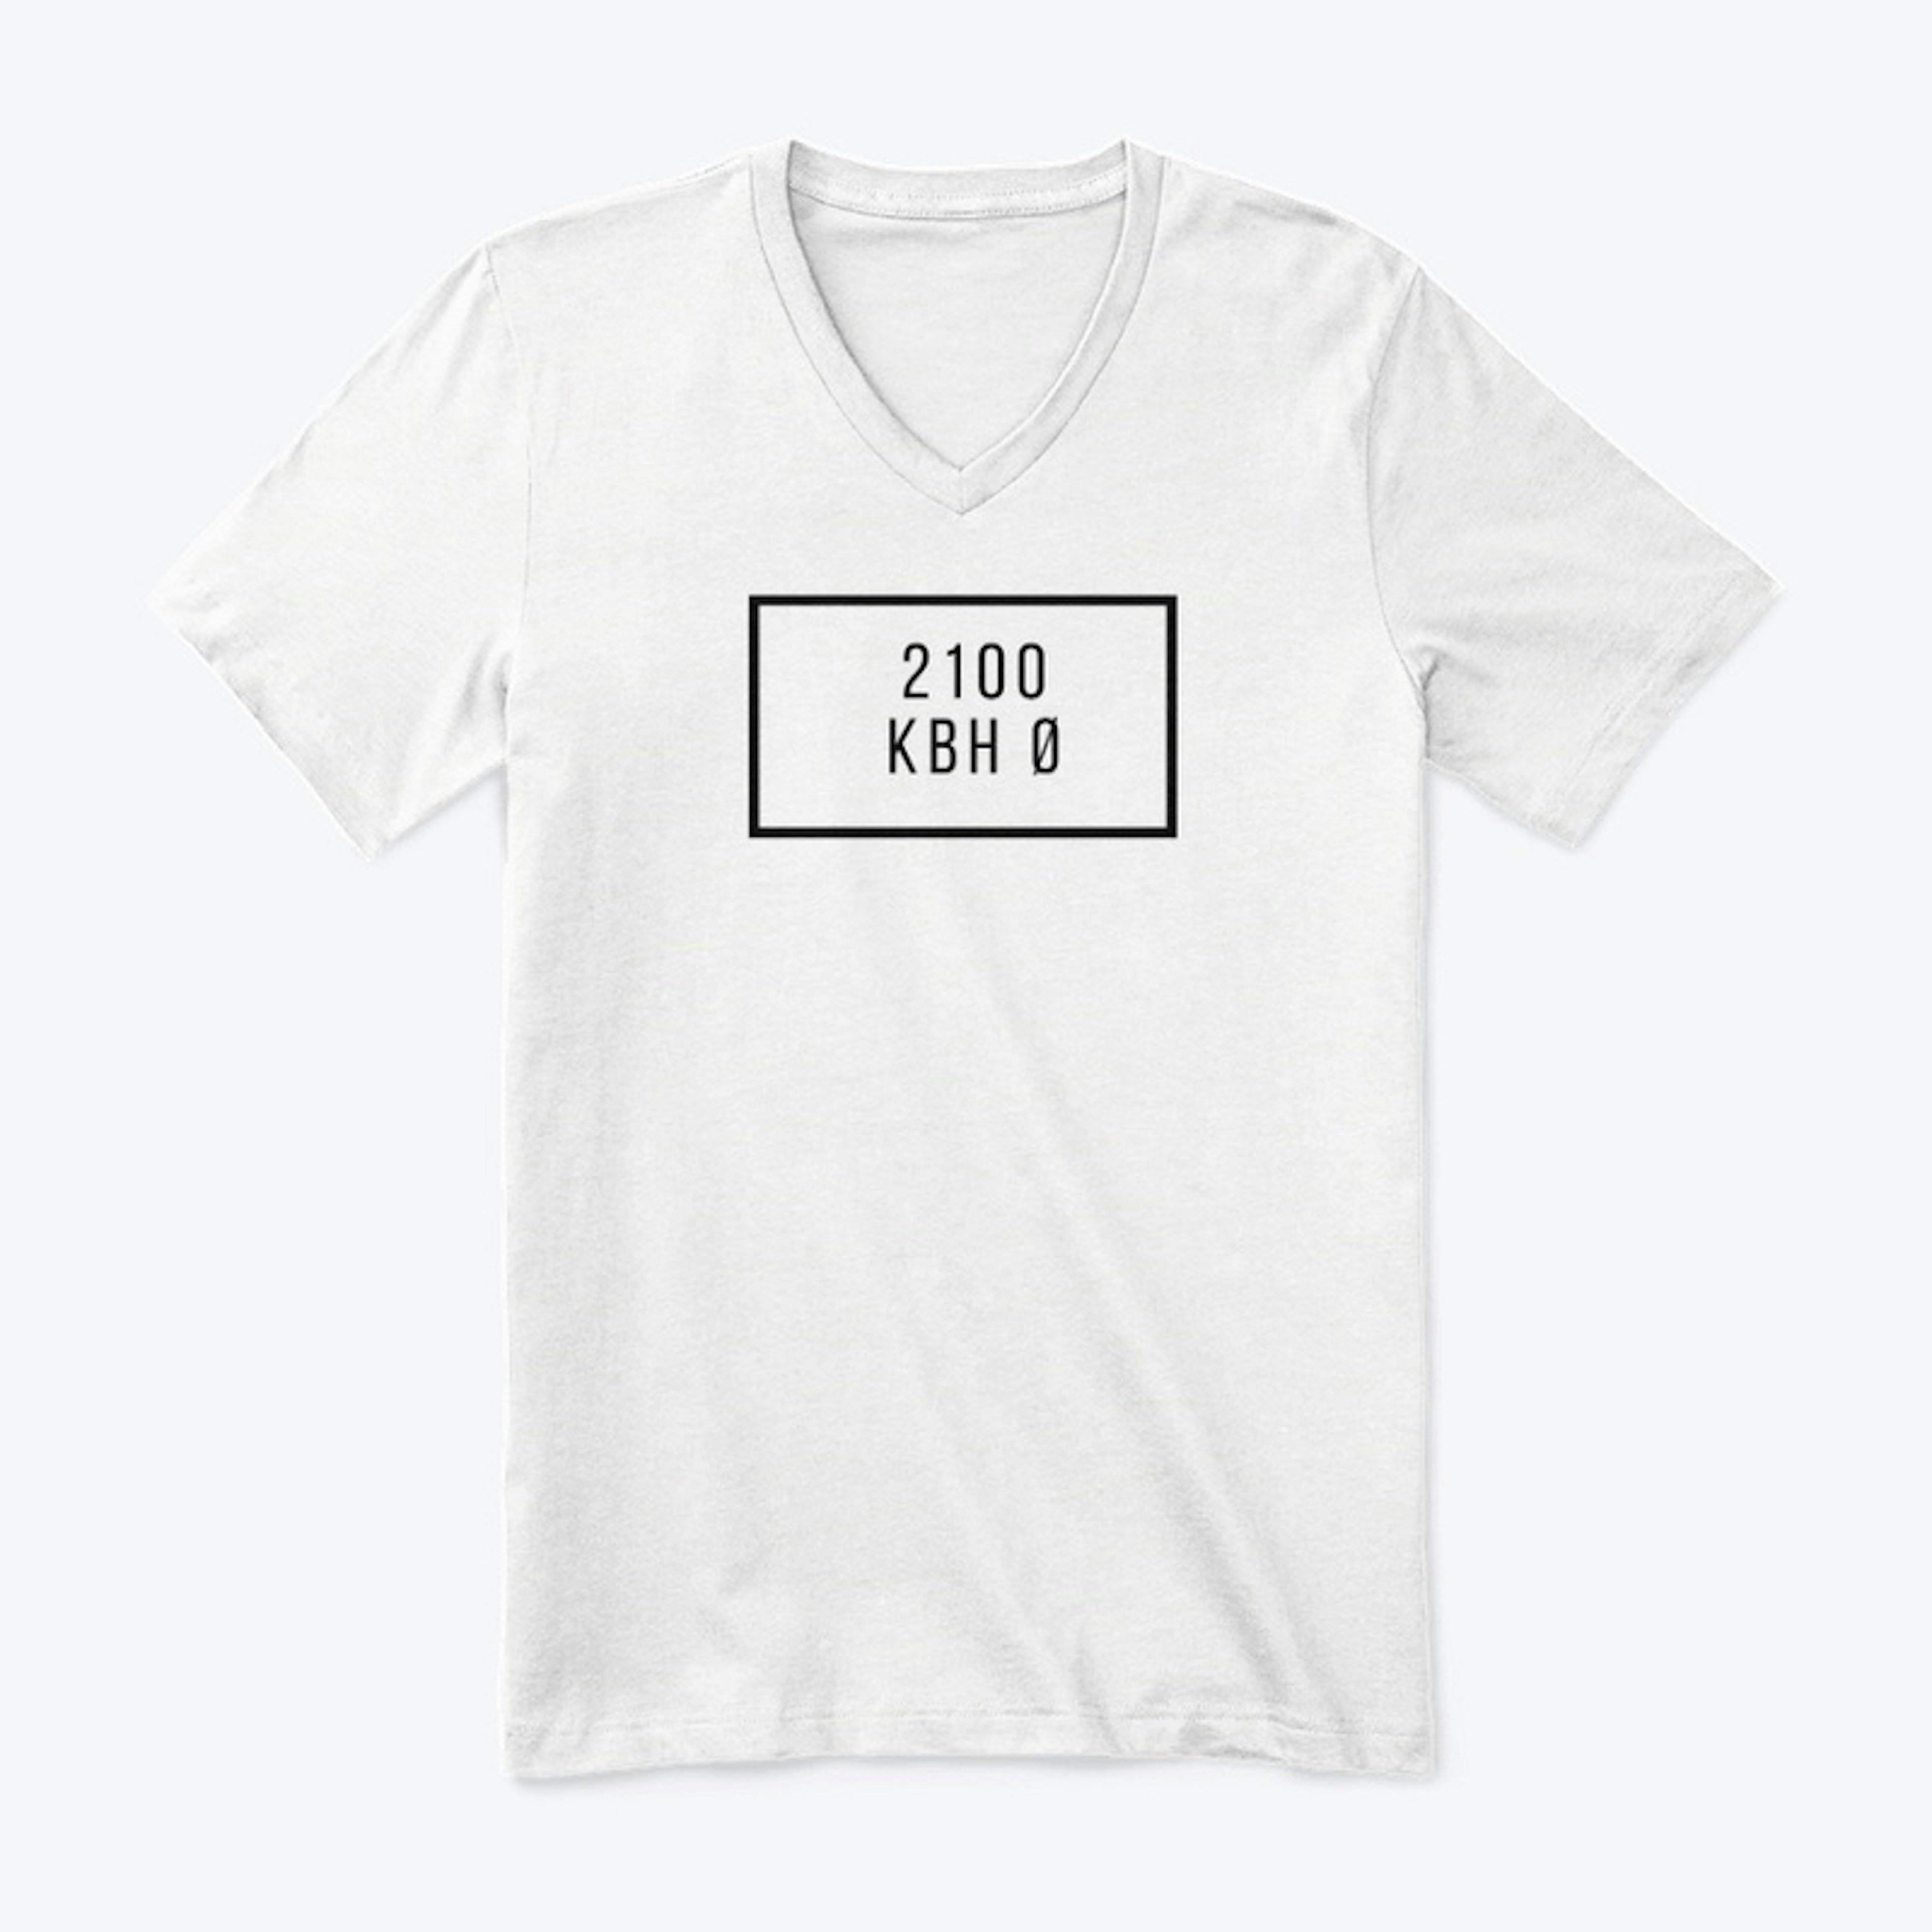 2100 KBH Ø t-shirt - Østerbro Copenhagen